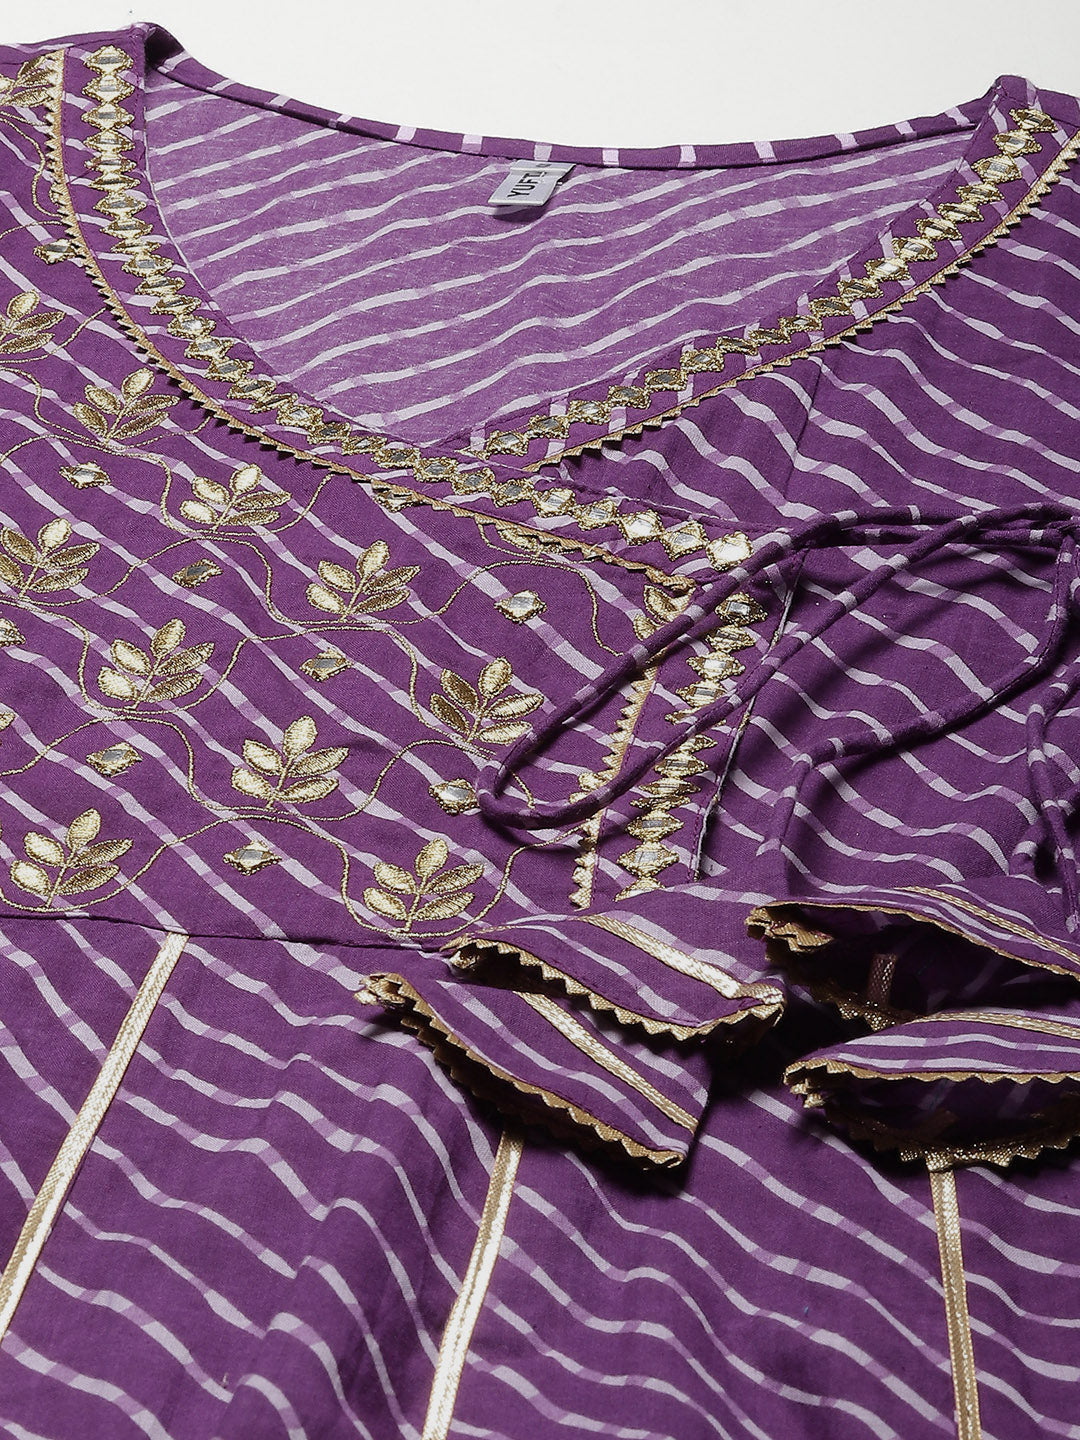 Purple Ethnic Motifs Maxi Dress